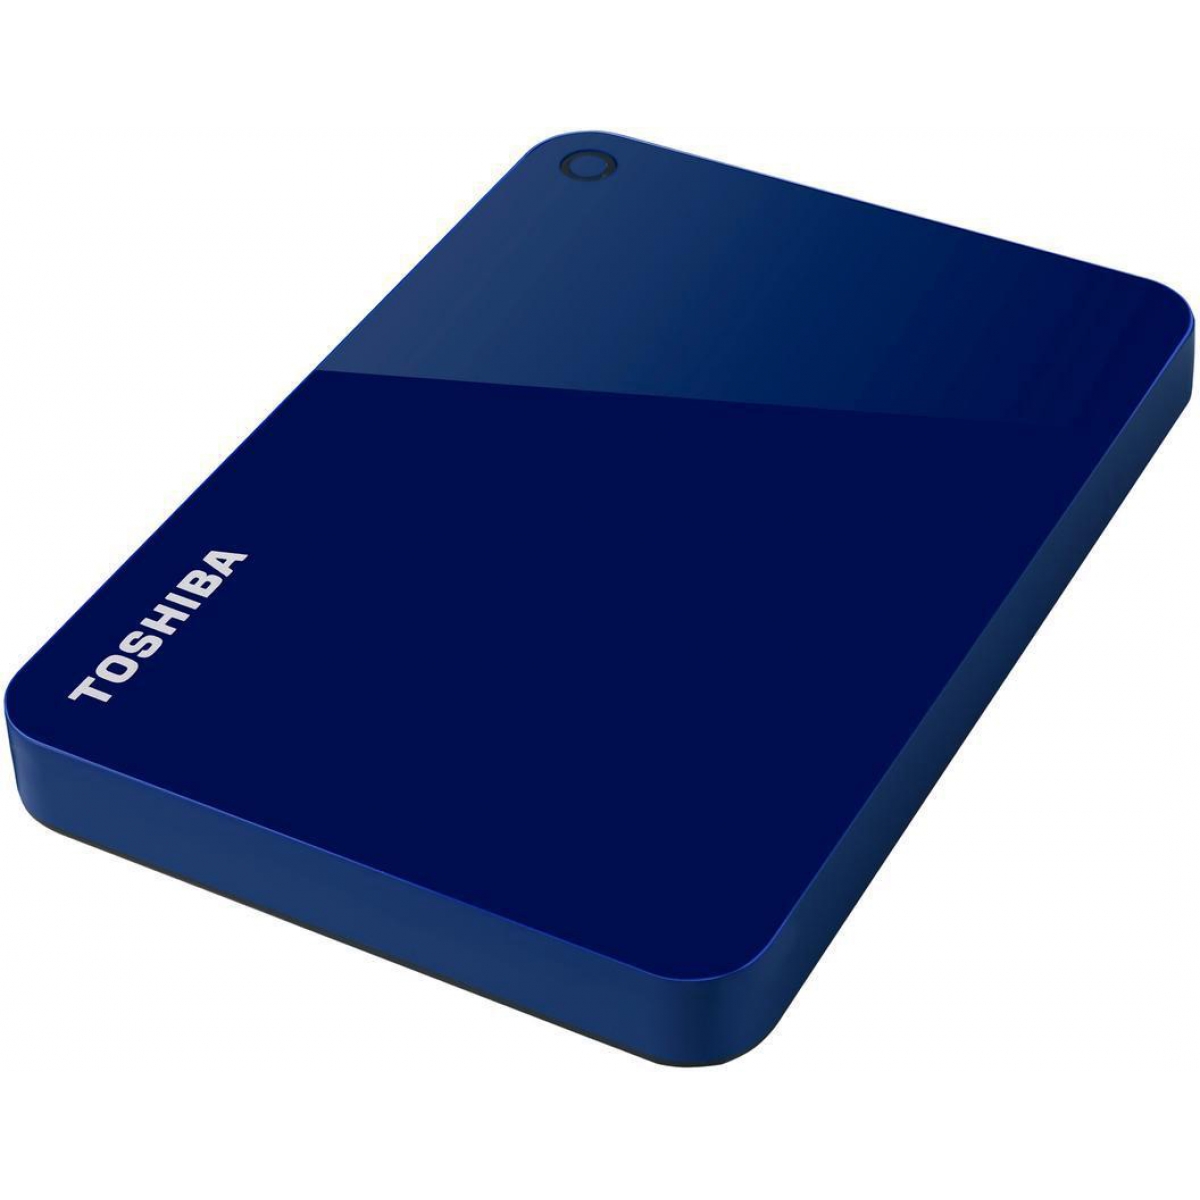 HD Externo Portátil Toshiba Canvio Advance 1TB HDTC910XL3AA USB 3.0 Azul